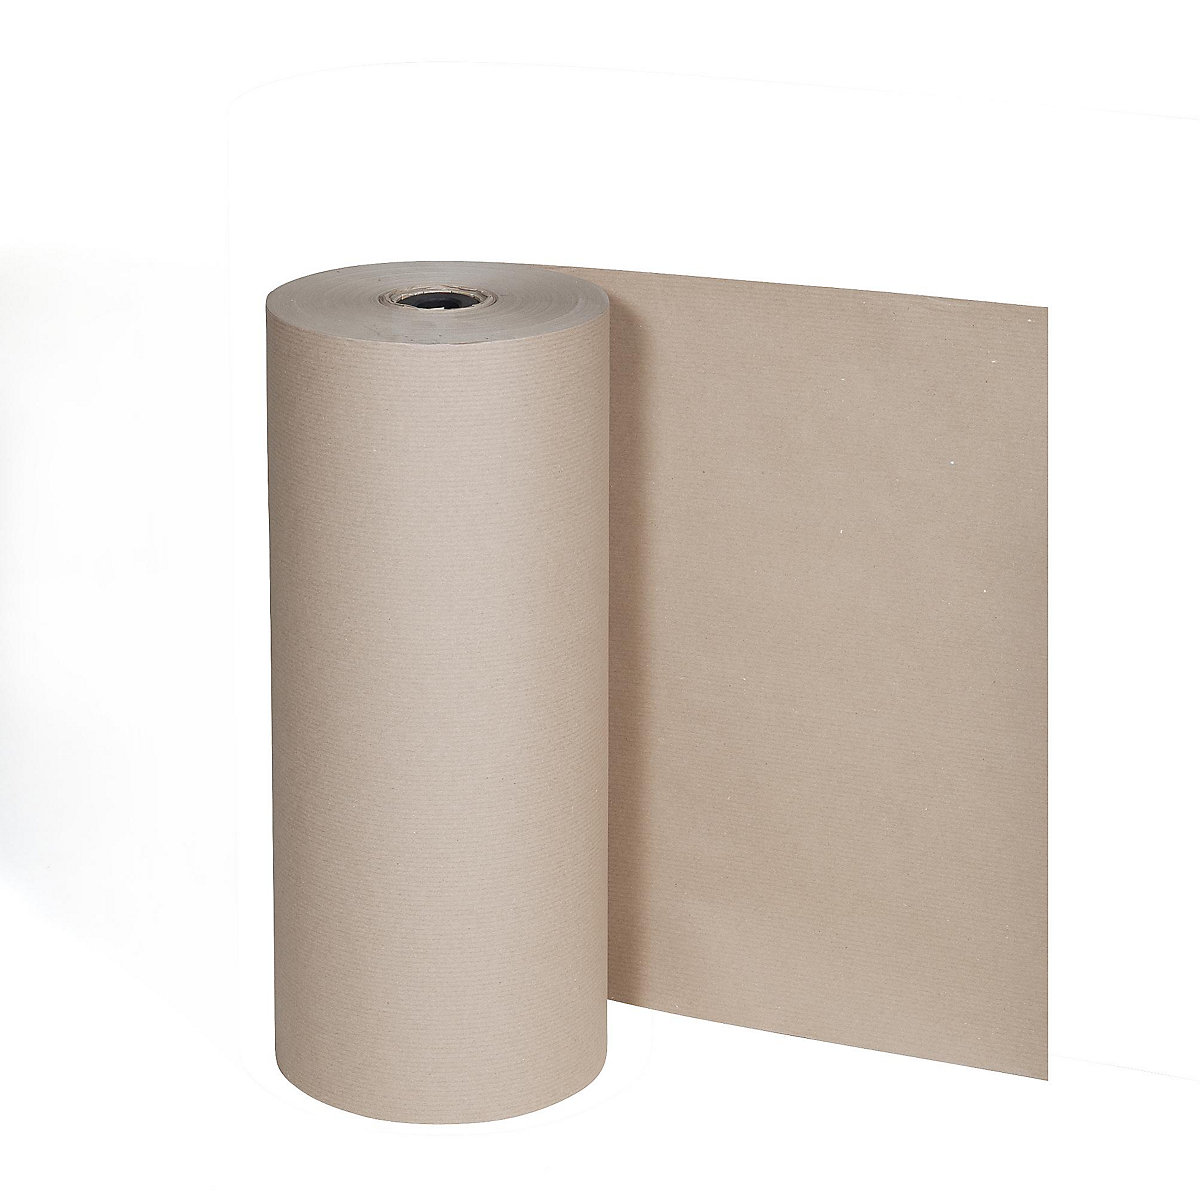 Csomagolópapír, 80 g/m², állvány nagyméretű tekercsek függőleges tárolásához, szélesség 1250 mm-4